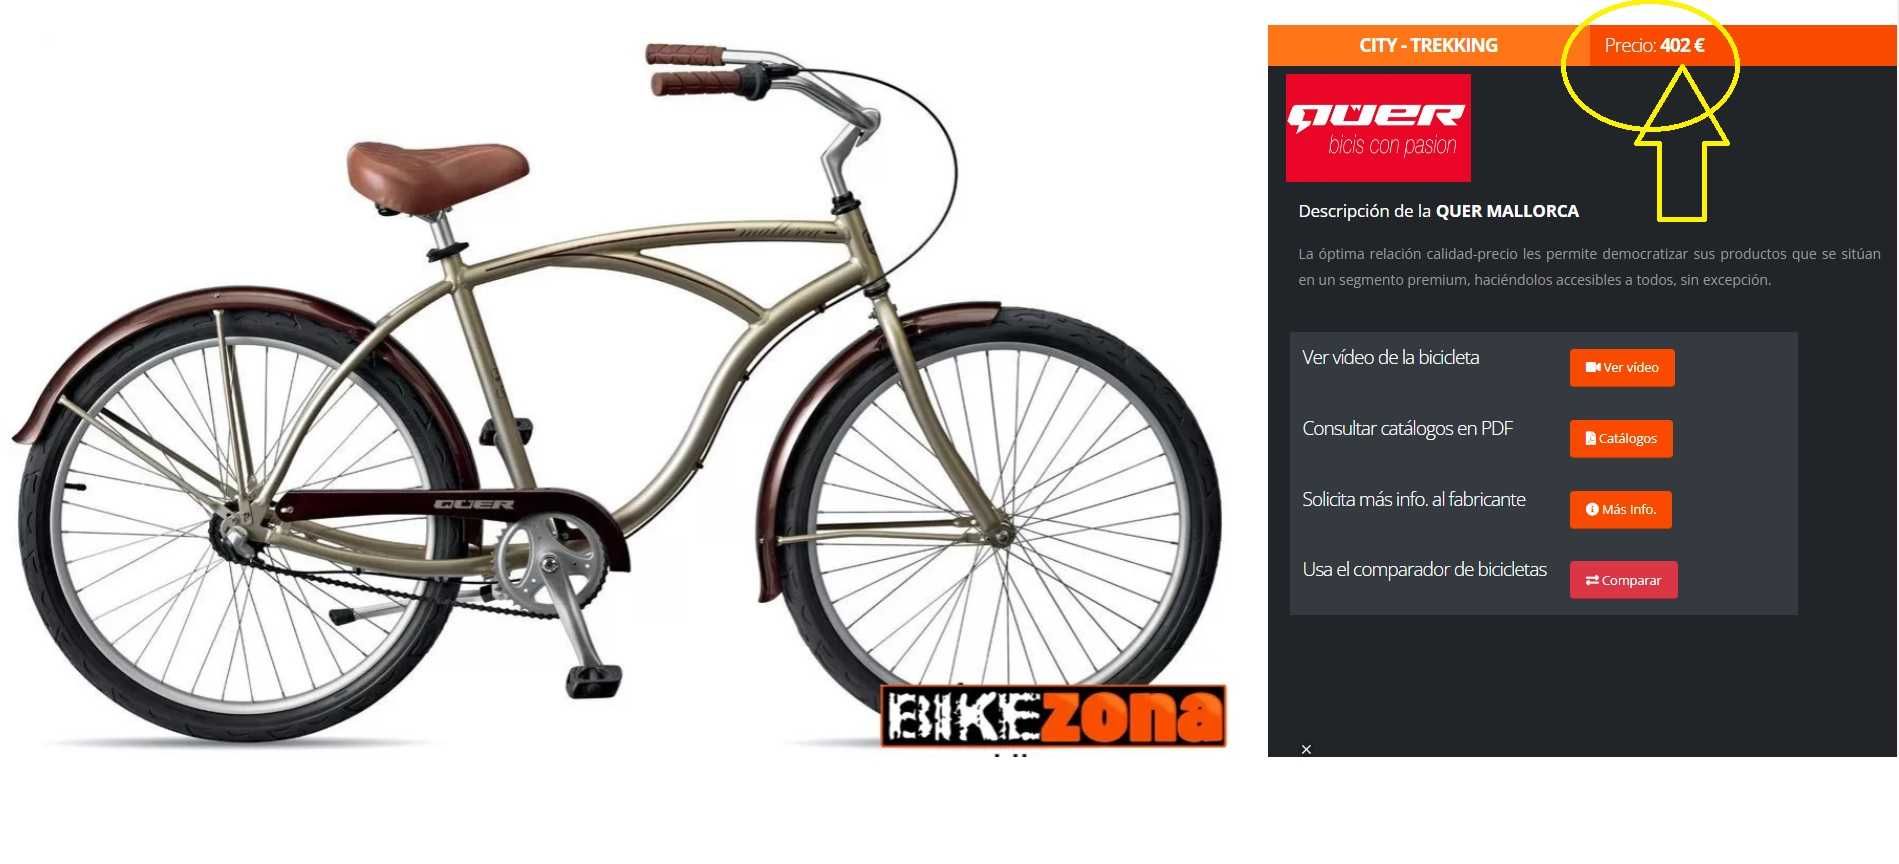 Bicicleta "Quer", quadro alumínio, como nova (custa nova 405 euros)